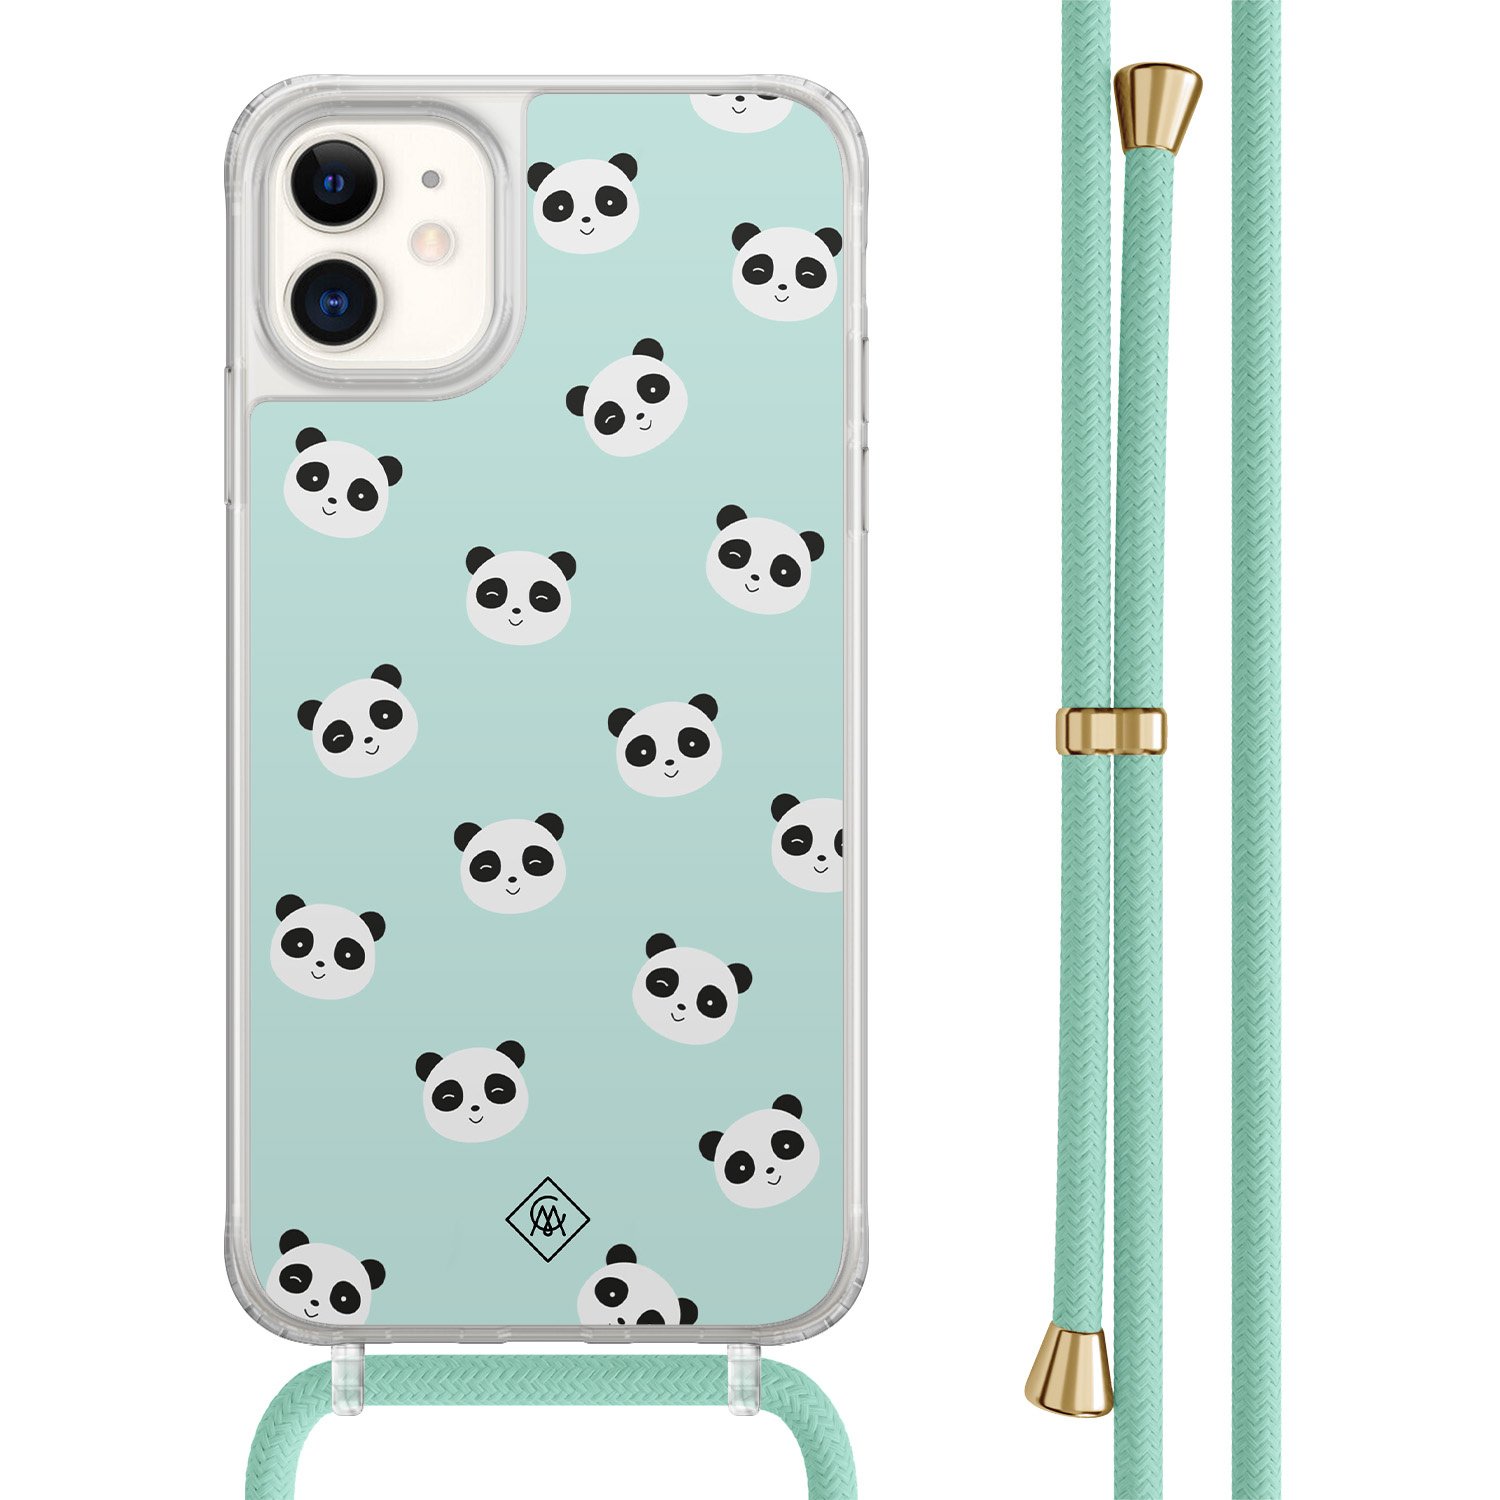 Casimoda® - iPhone 11 hoesje met mintgroen koord - Panda print - Afneembaar koord - TPU/acryl